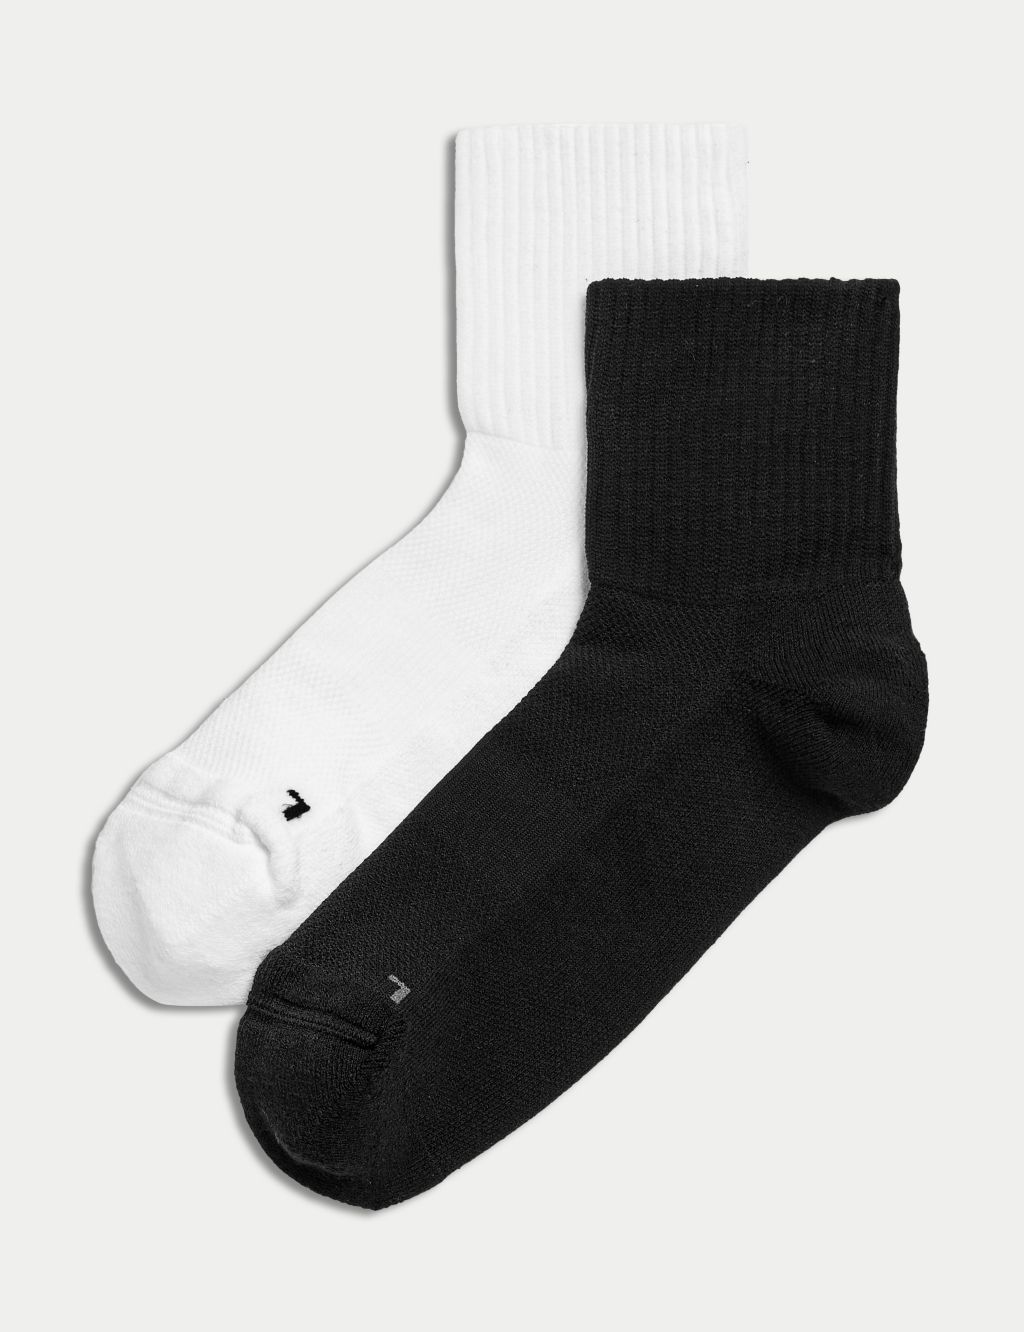 2pk Blister Resist Ankle High Socks image 1